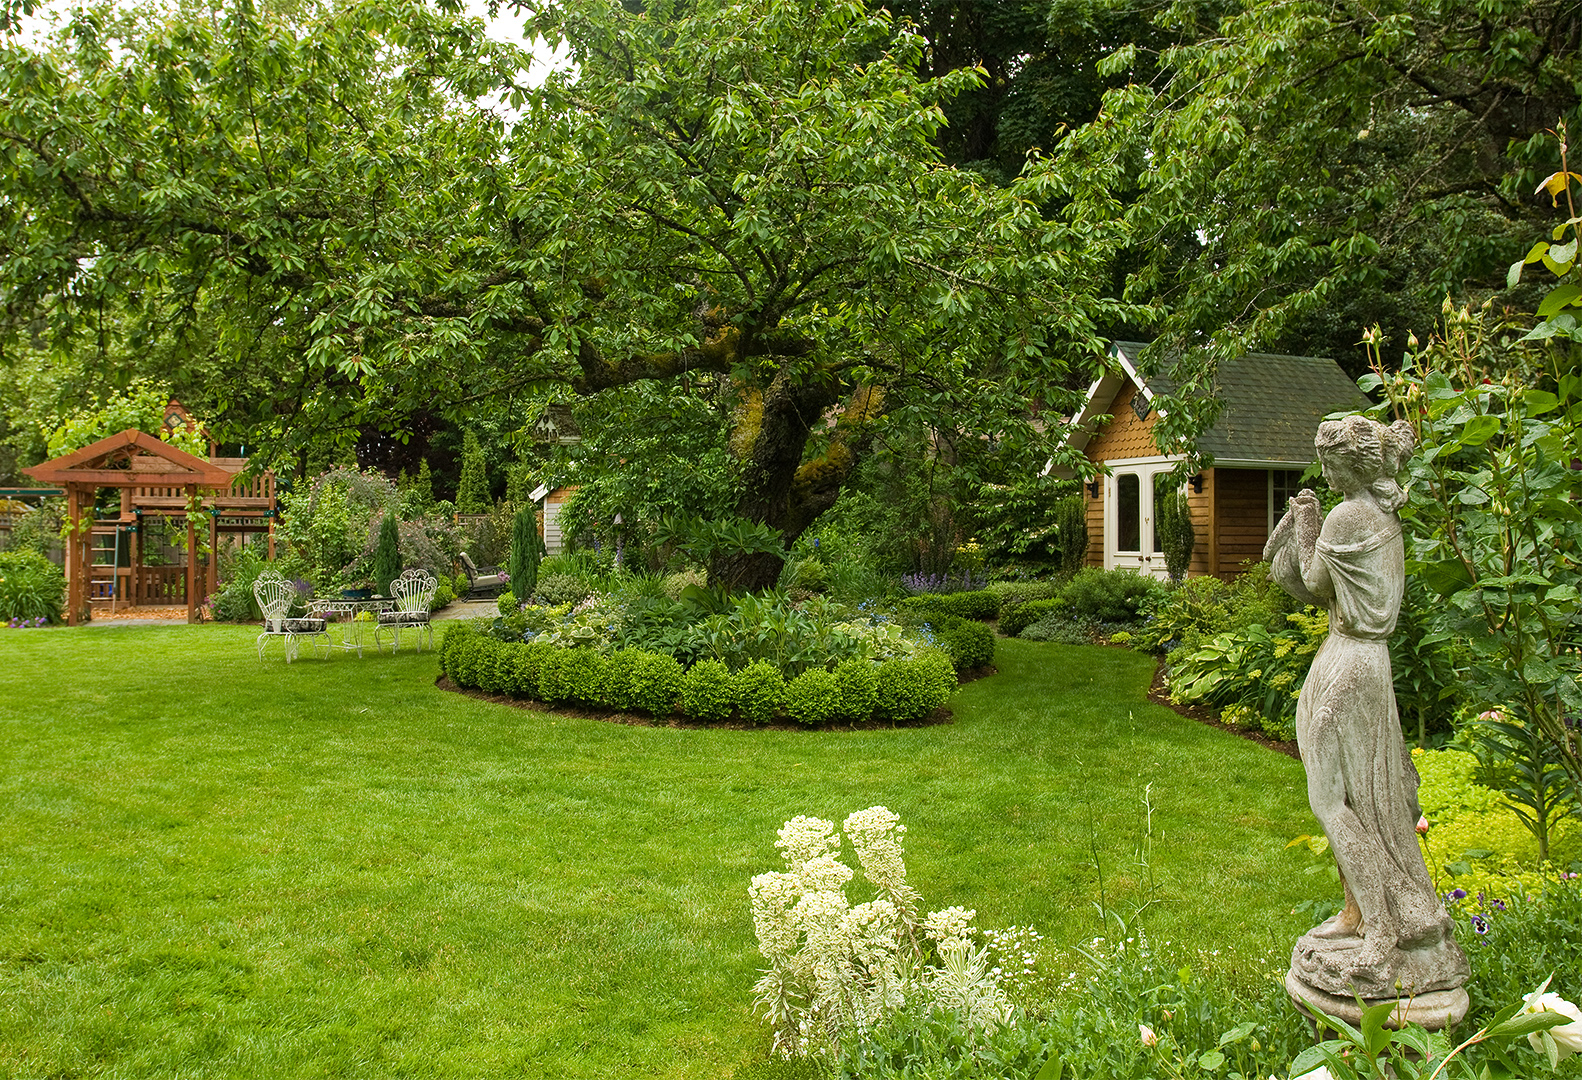 Simphome.com landscape plans better homes gardens throughout landscape design plans backyard